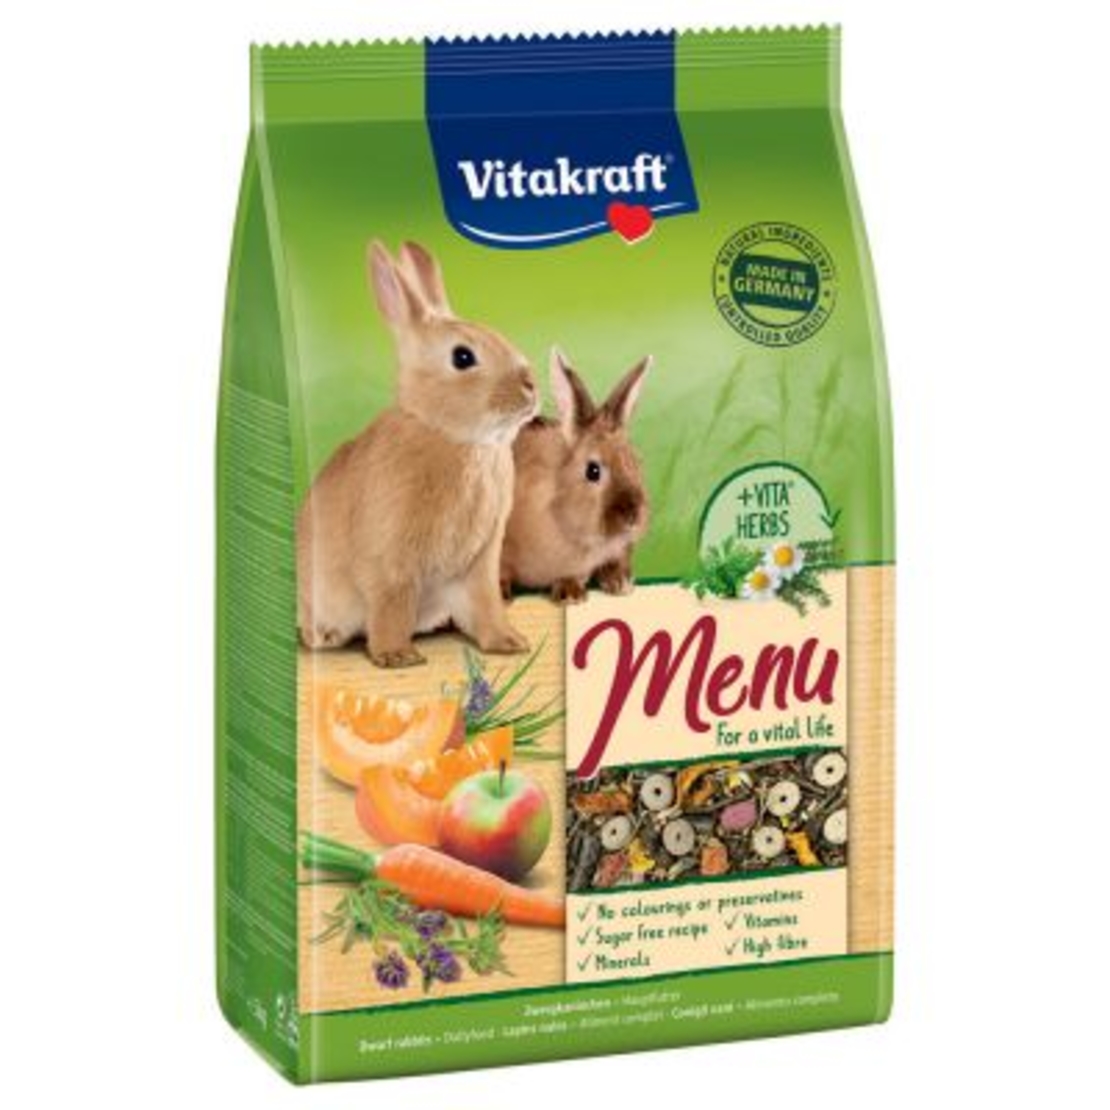 מזון לארנבים ויטה קראפט - MENU vital